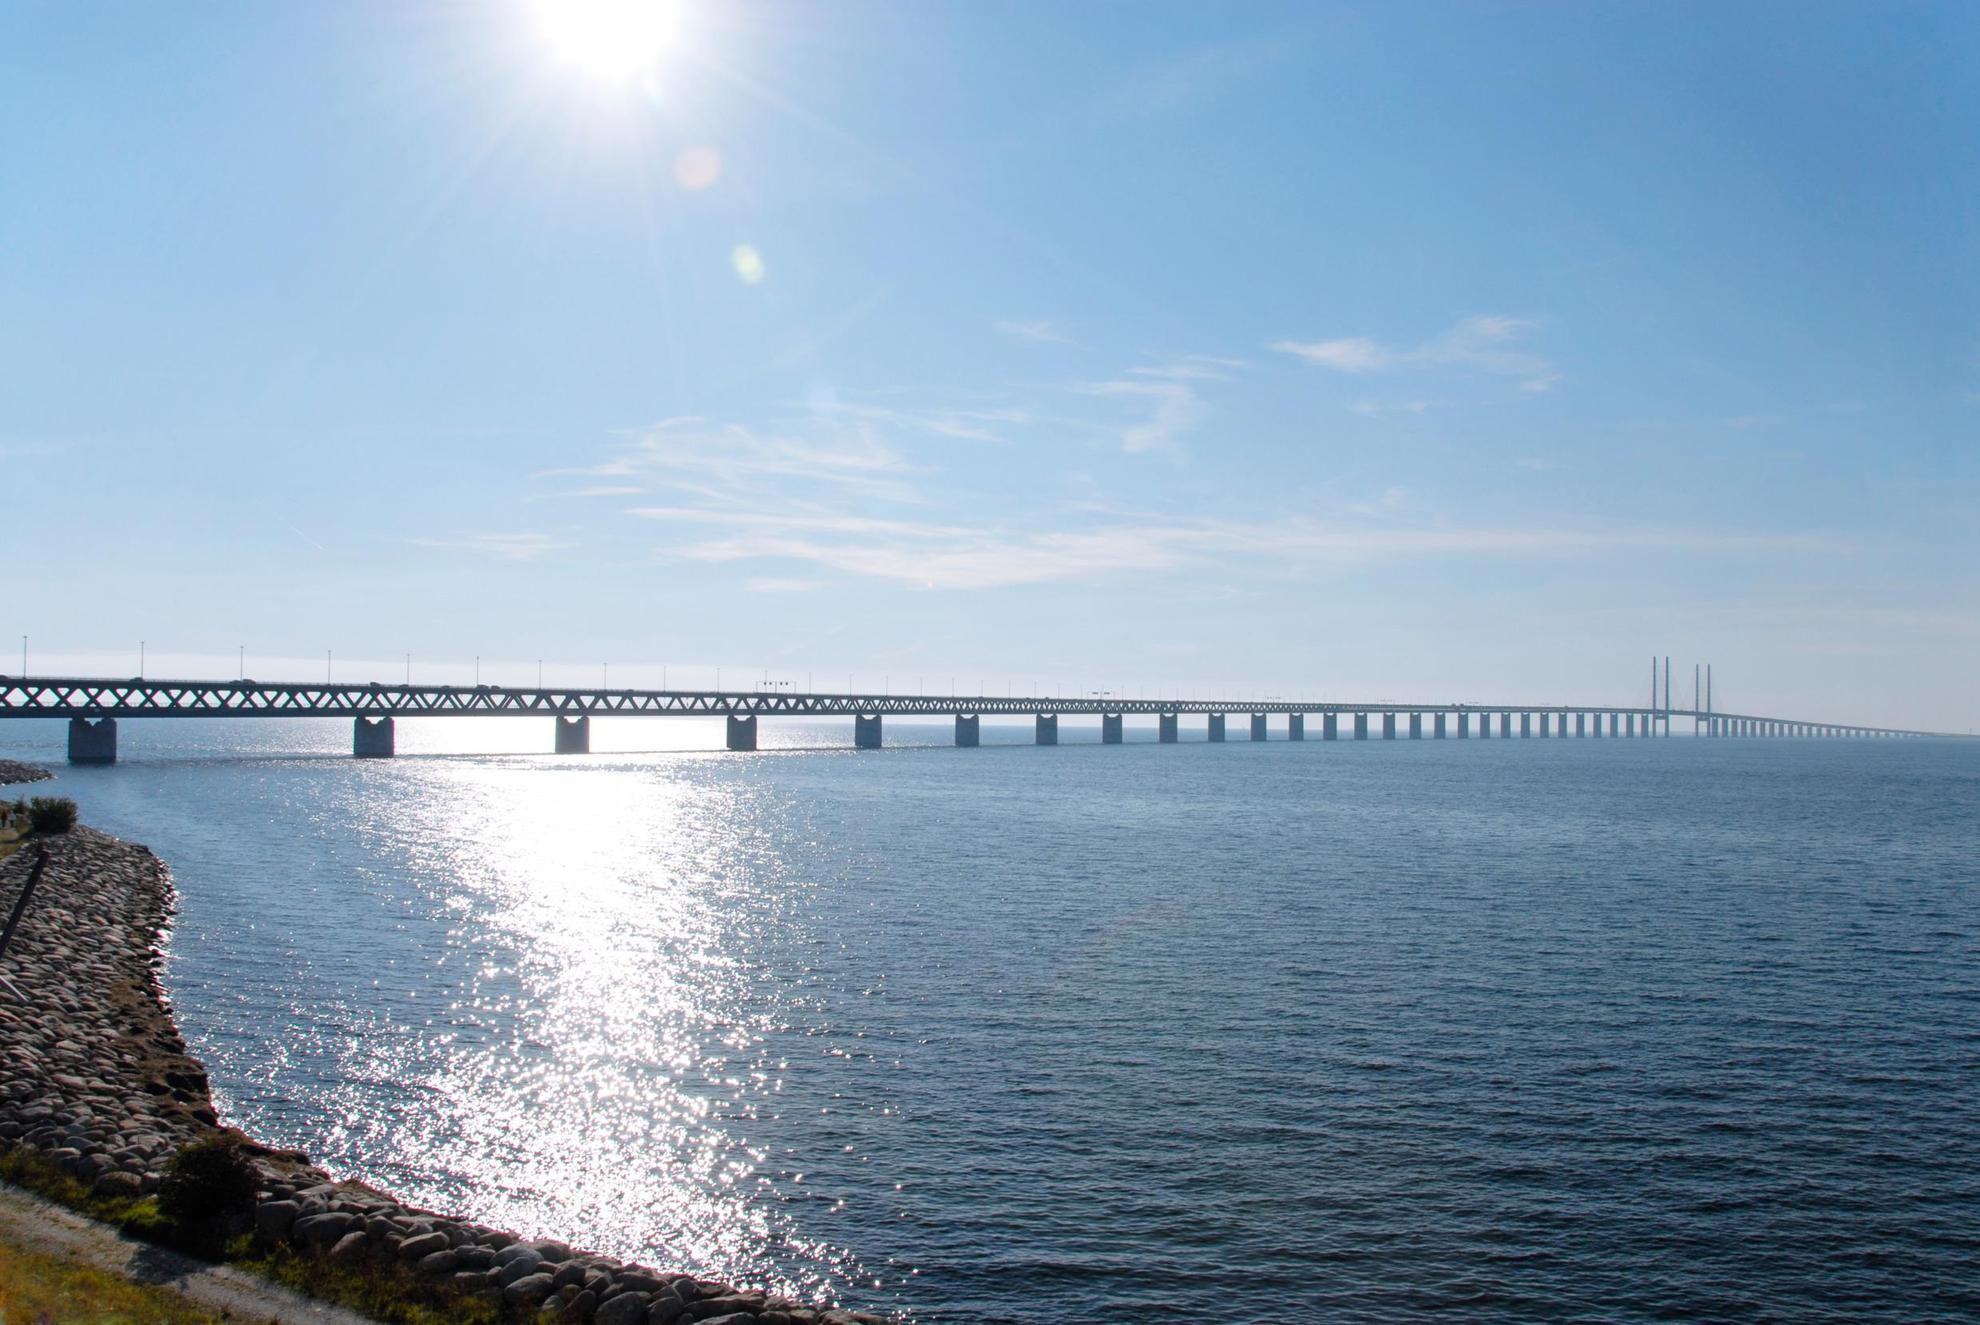 The Öresund Bridge seen from the Malmö seaside.